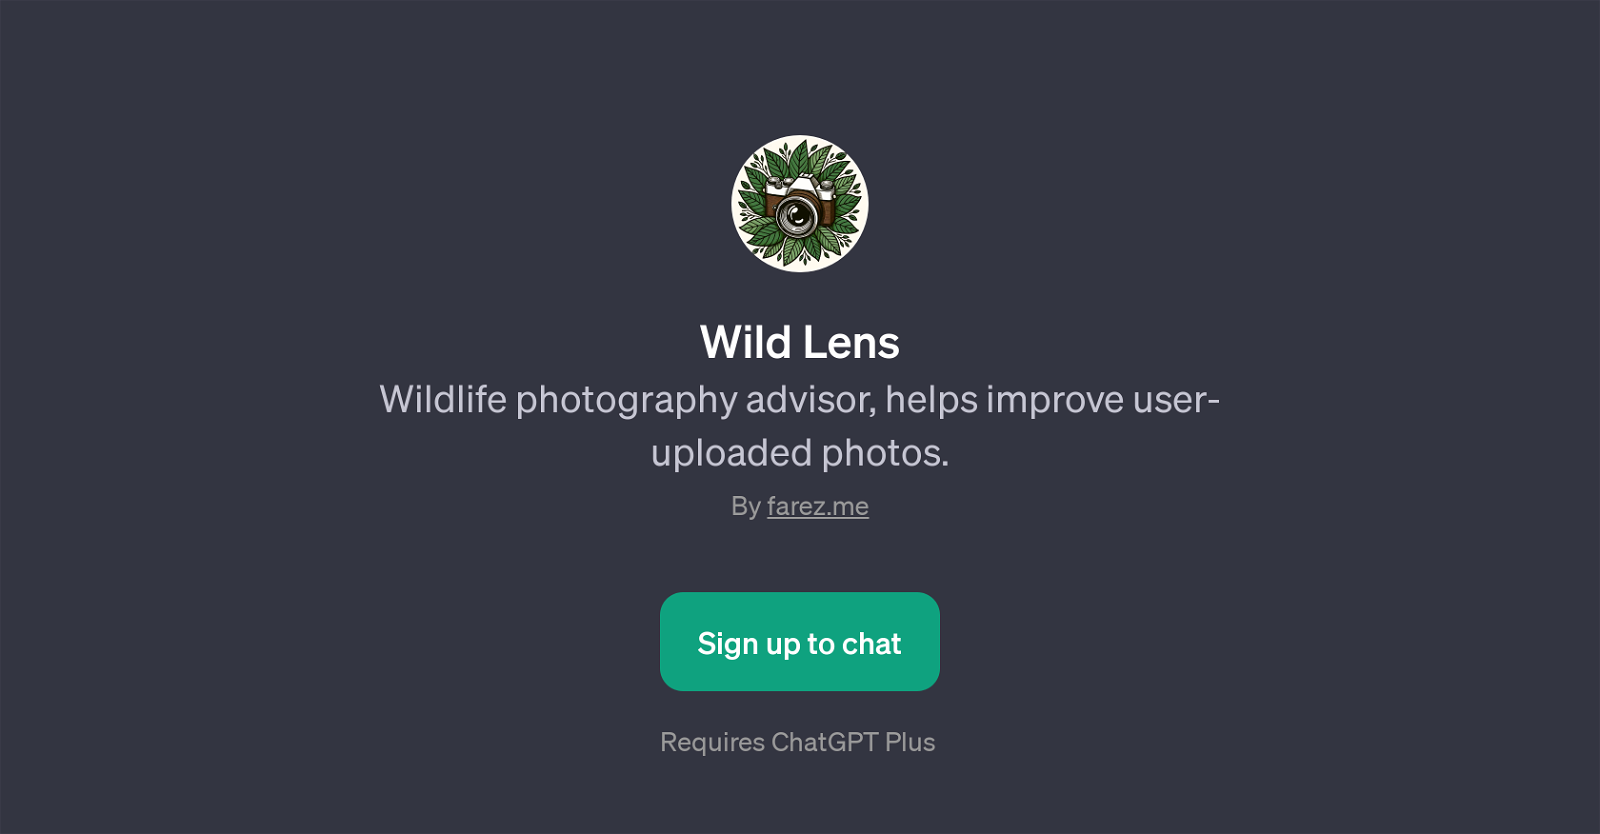 Wild Lens website